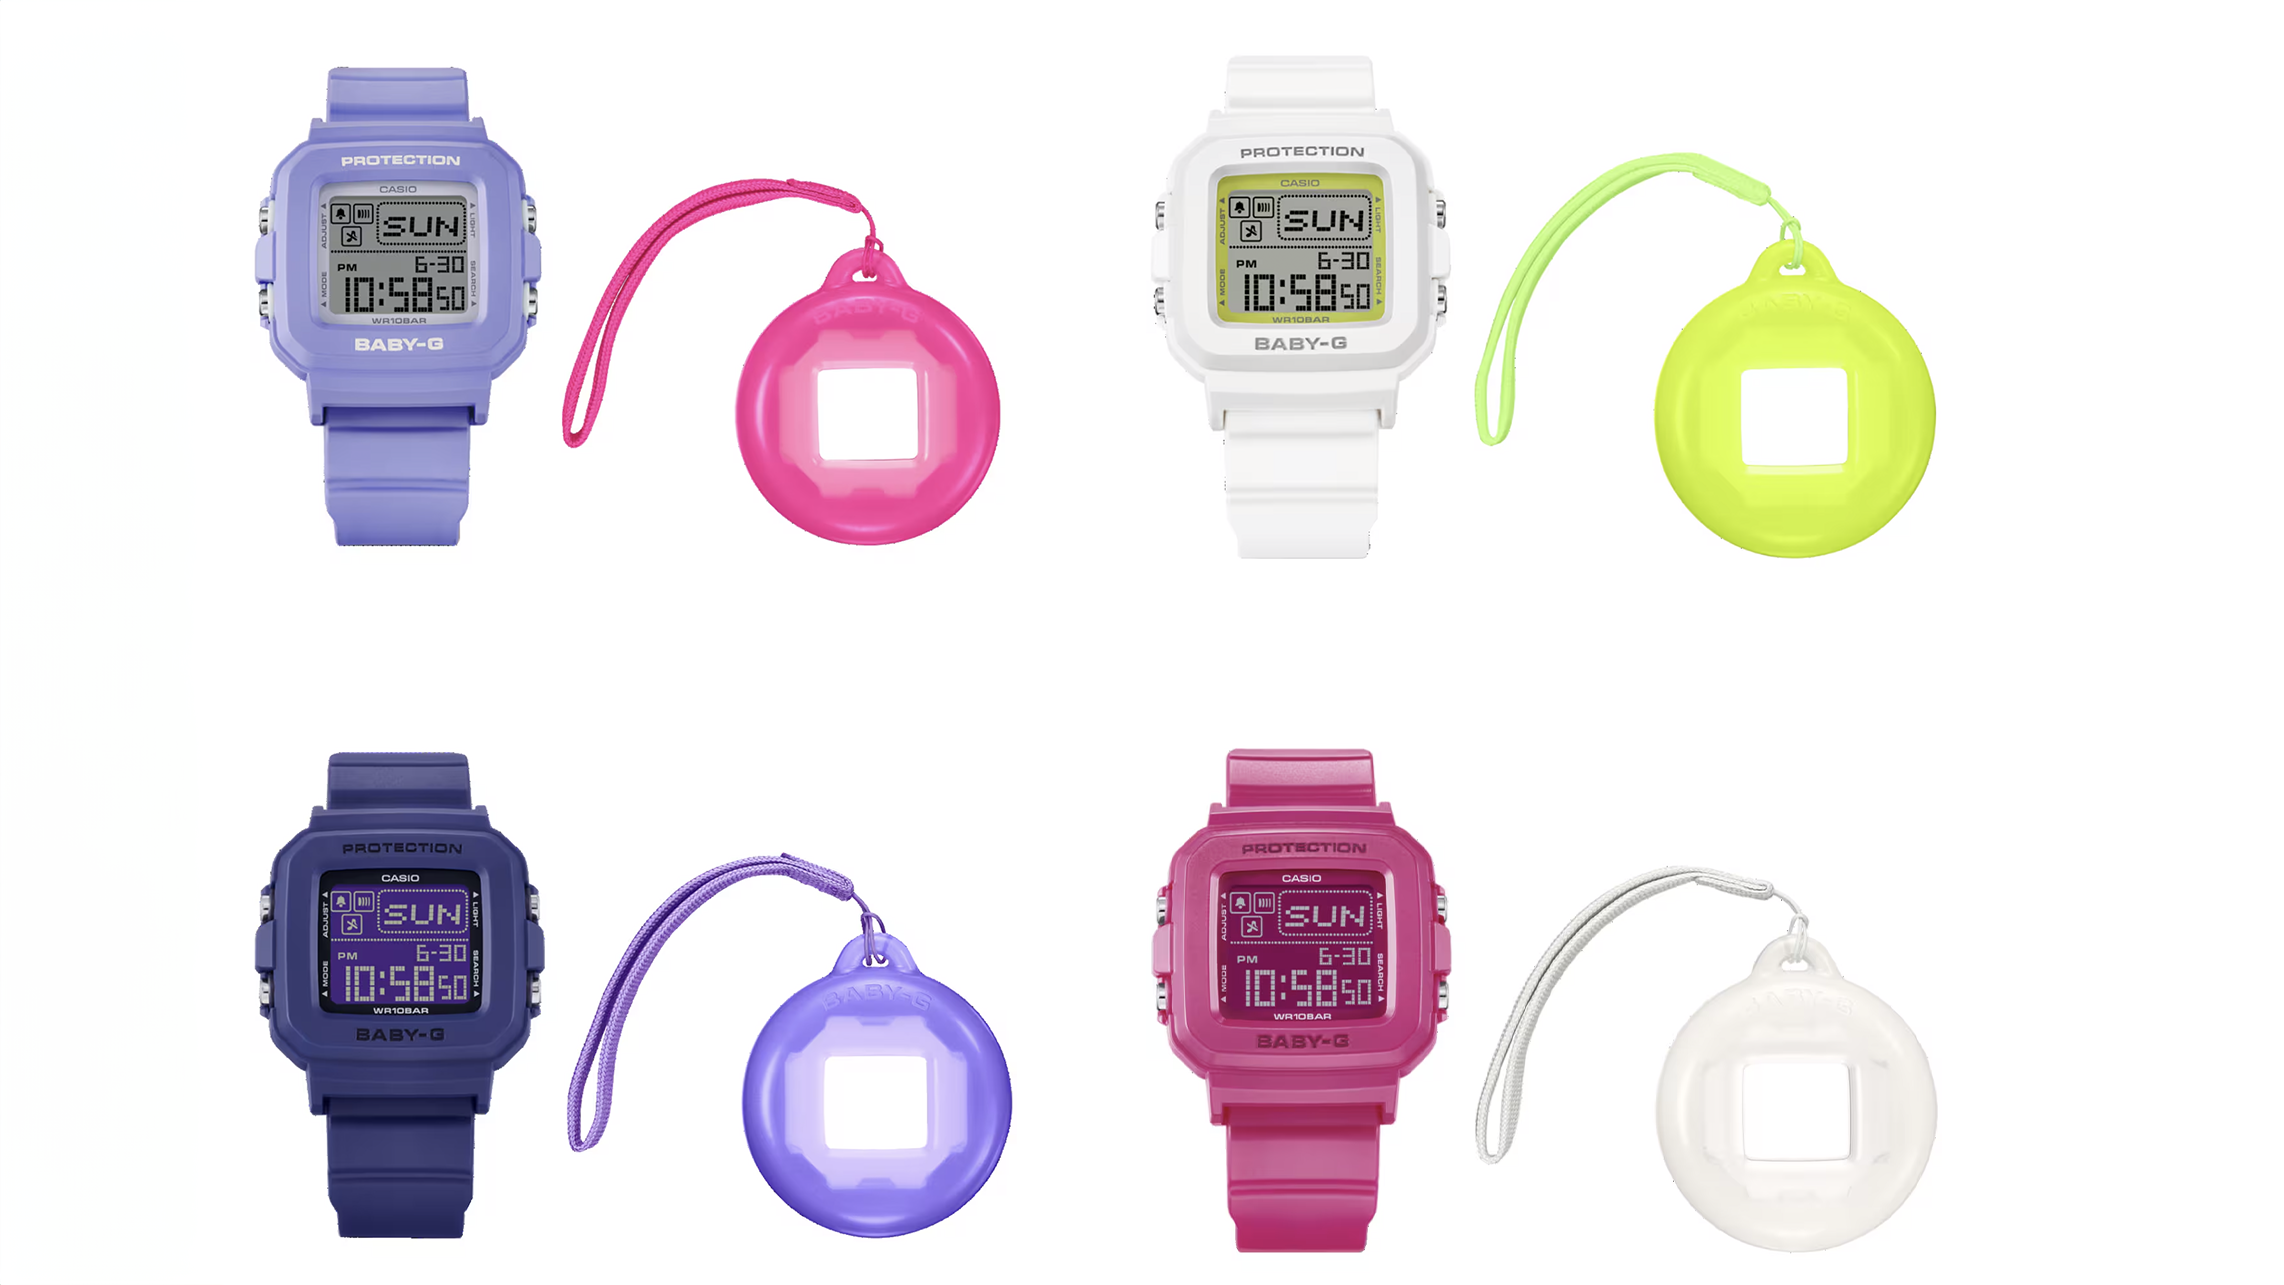 Casio Baby-G watches